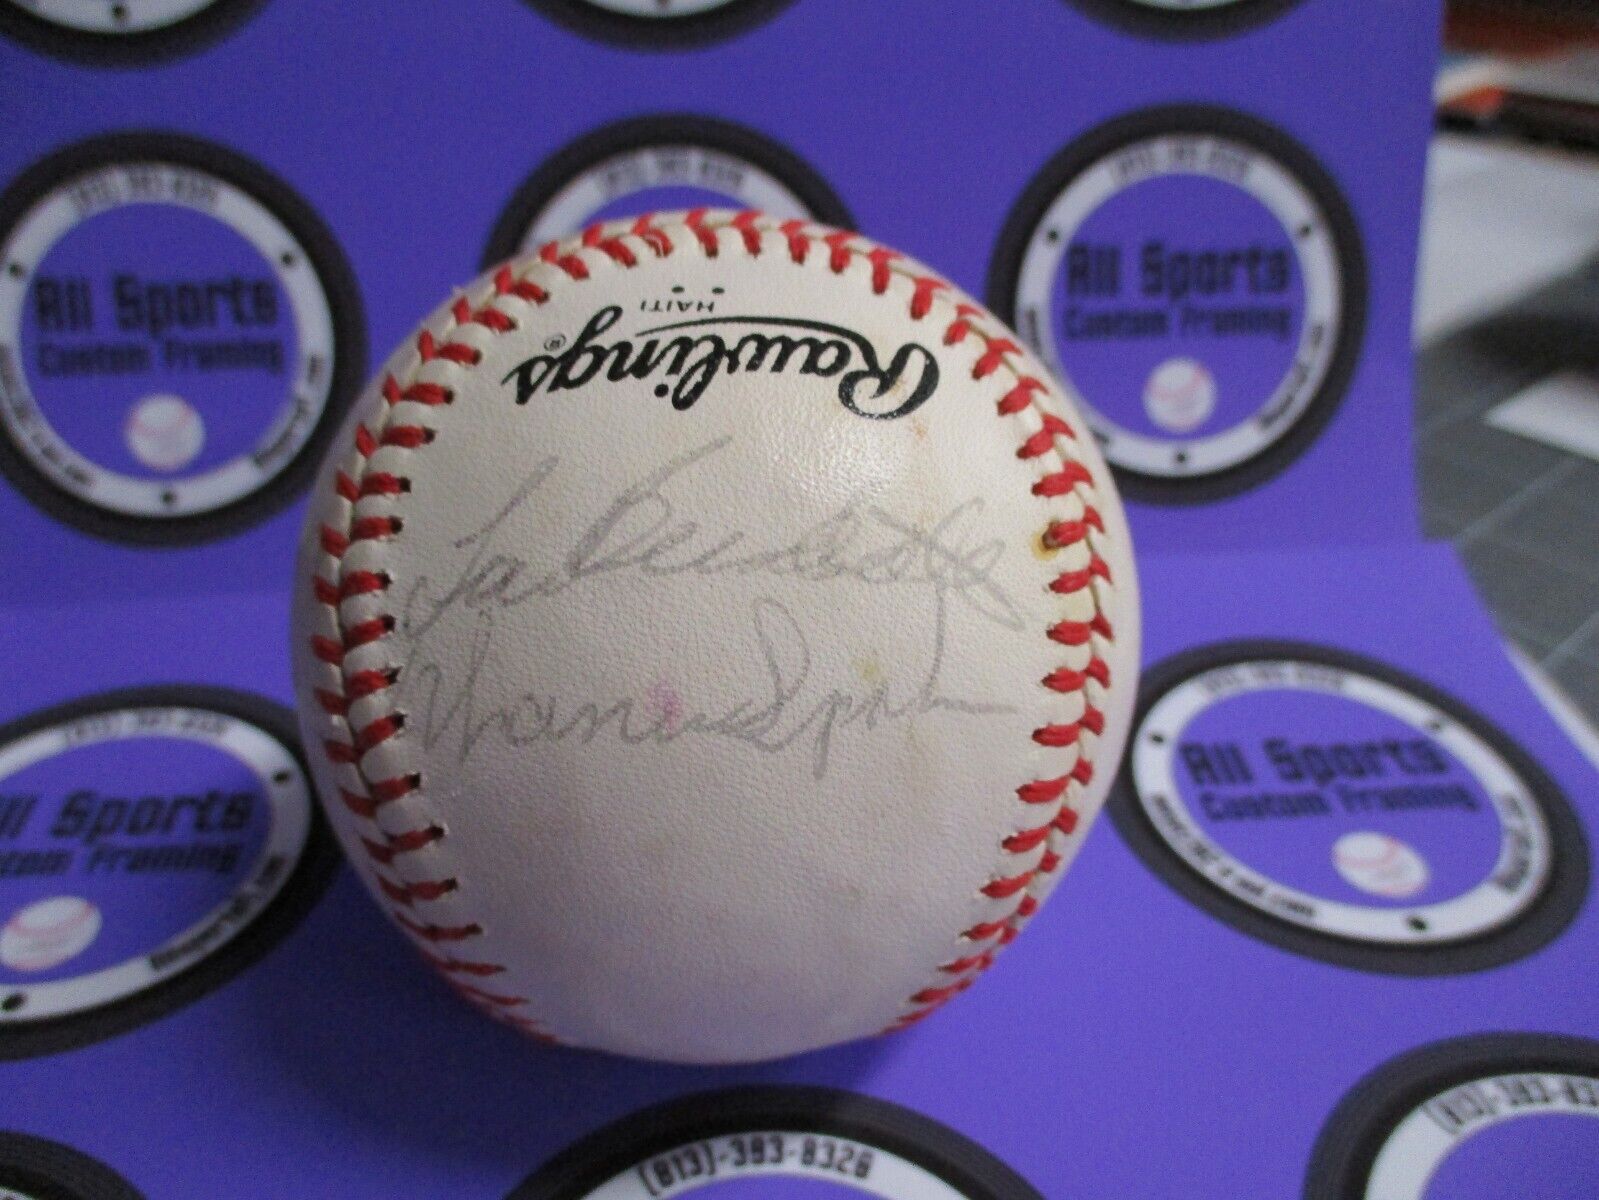 Warren Spahn Lew Burdette Autographed Baseball JSA #AD60450 Feeney Ball